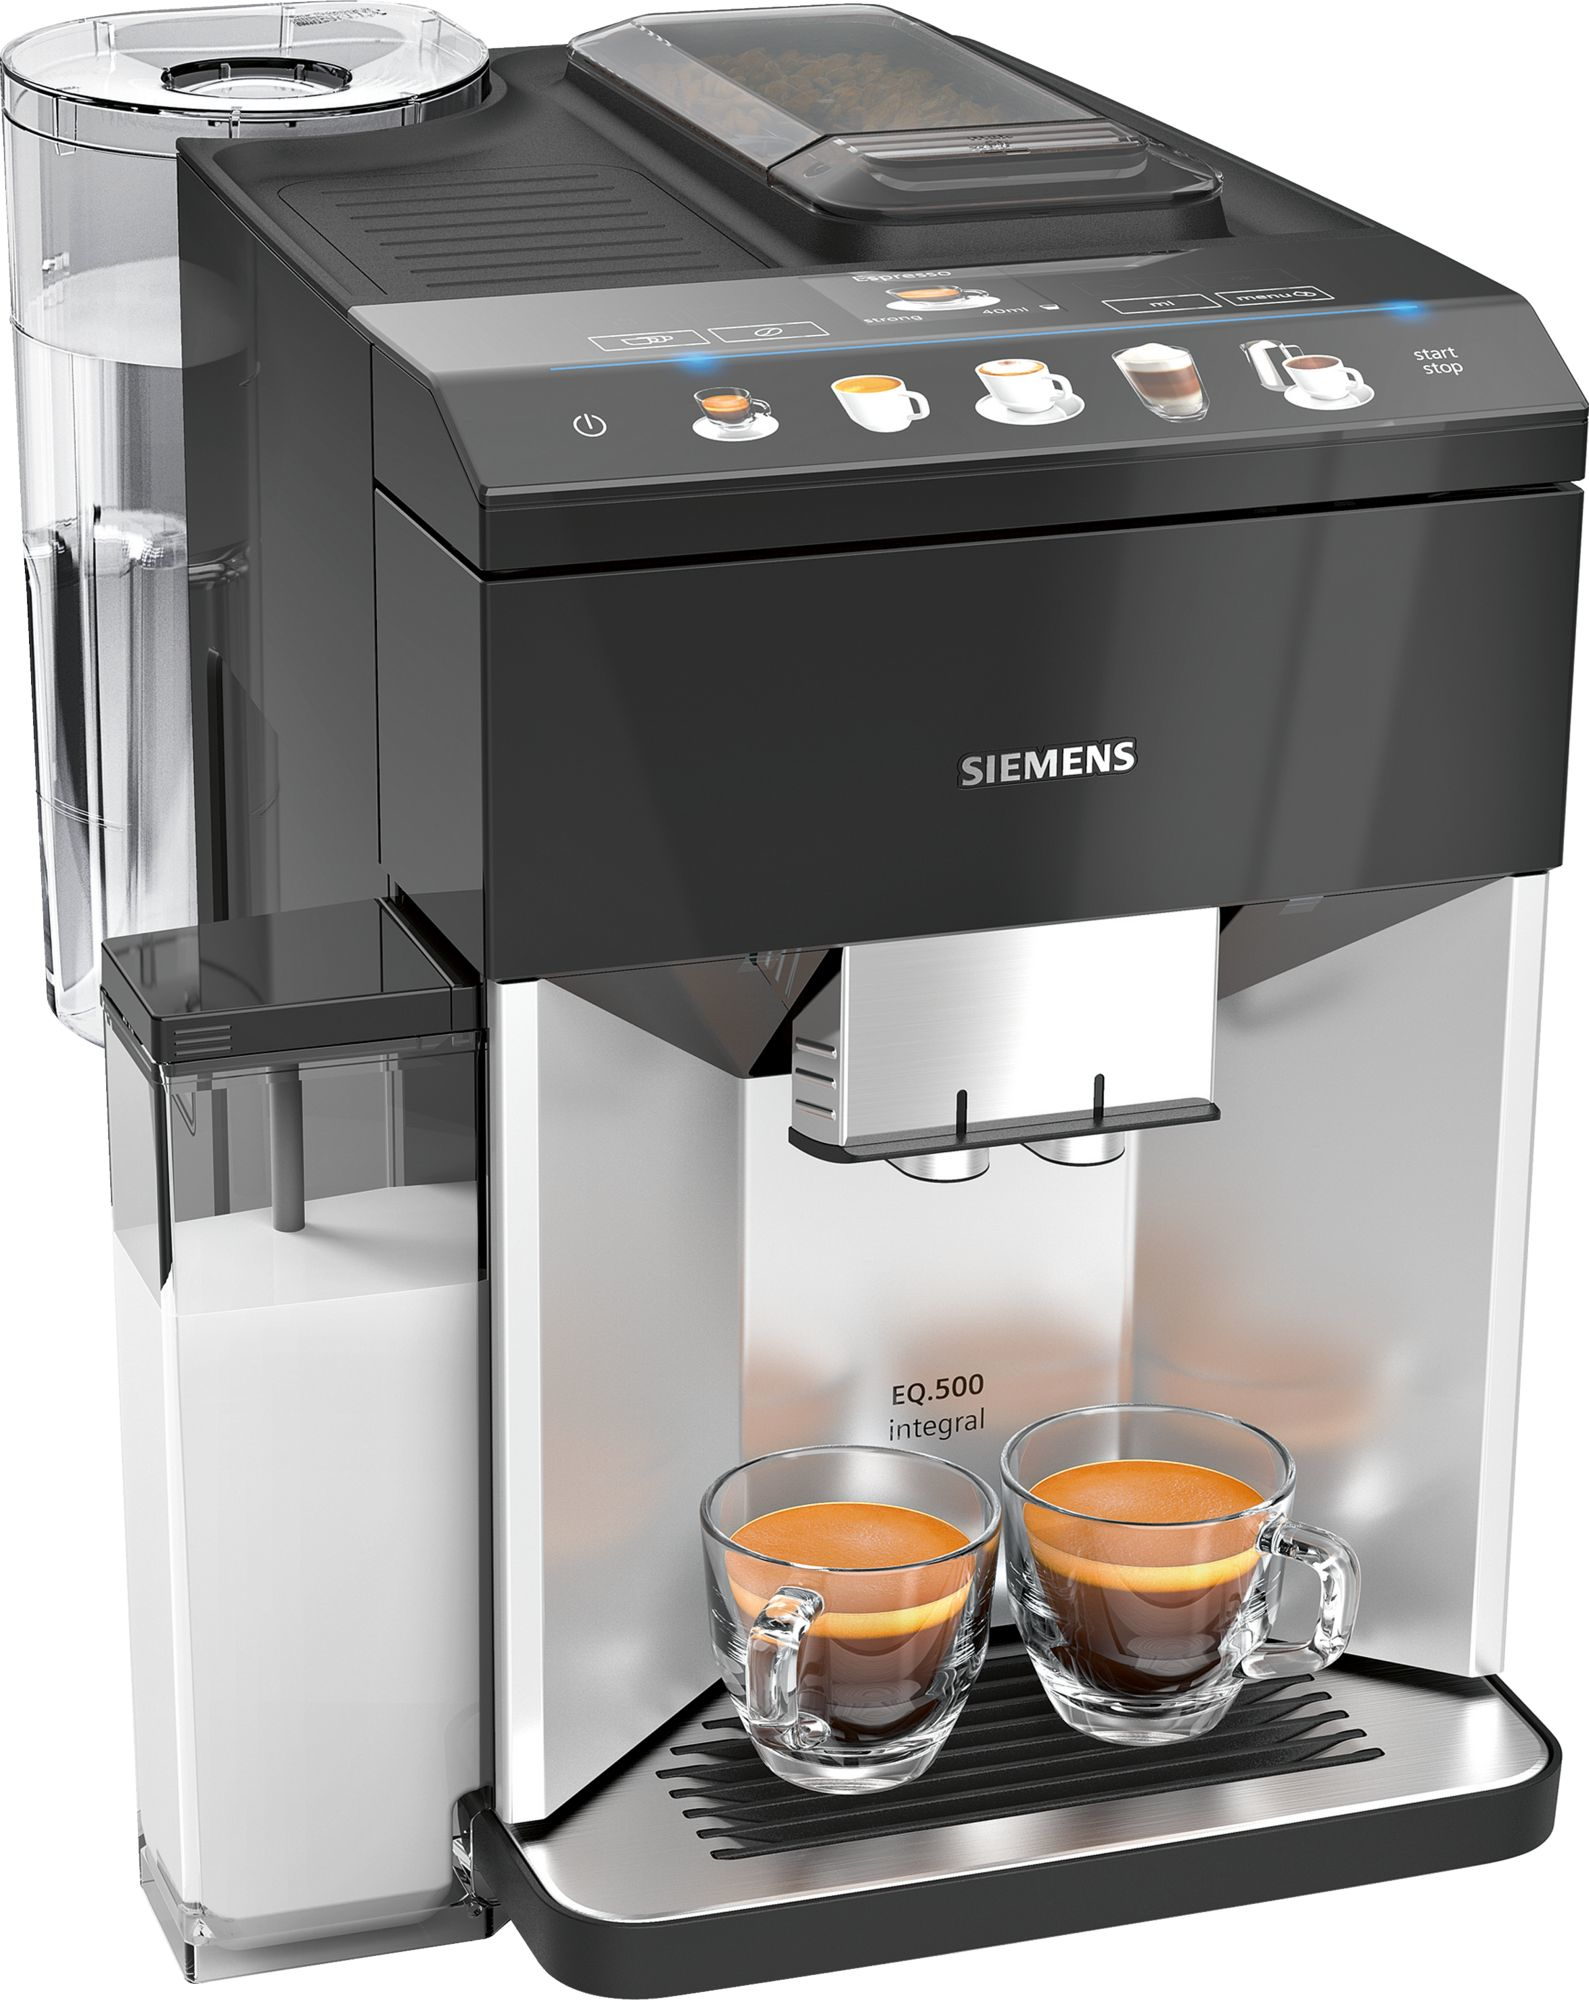 Siemens EQ.500 TQ503GB1 coffee maker